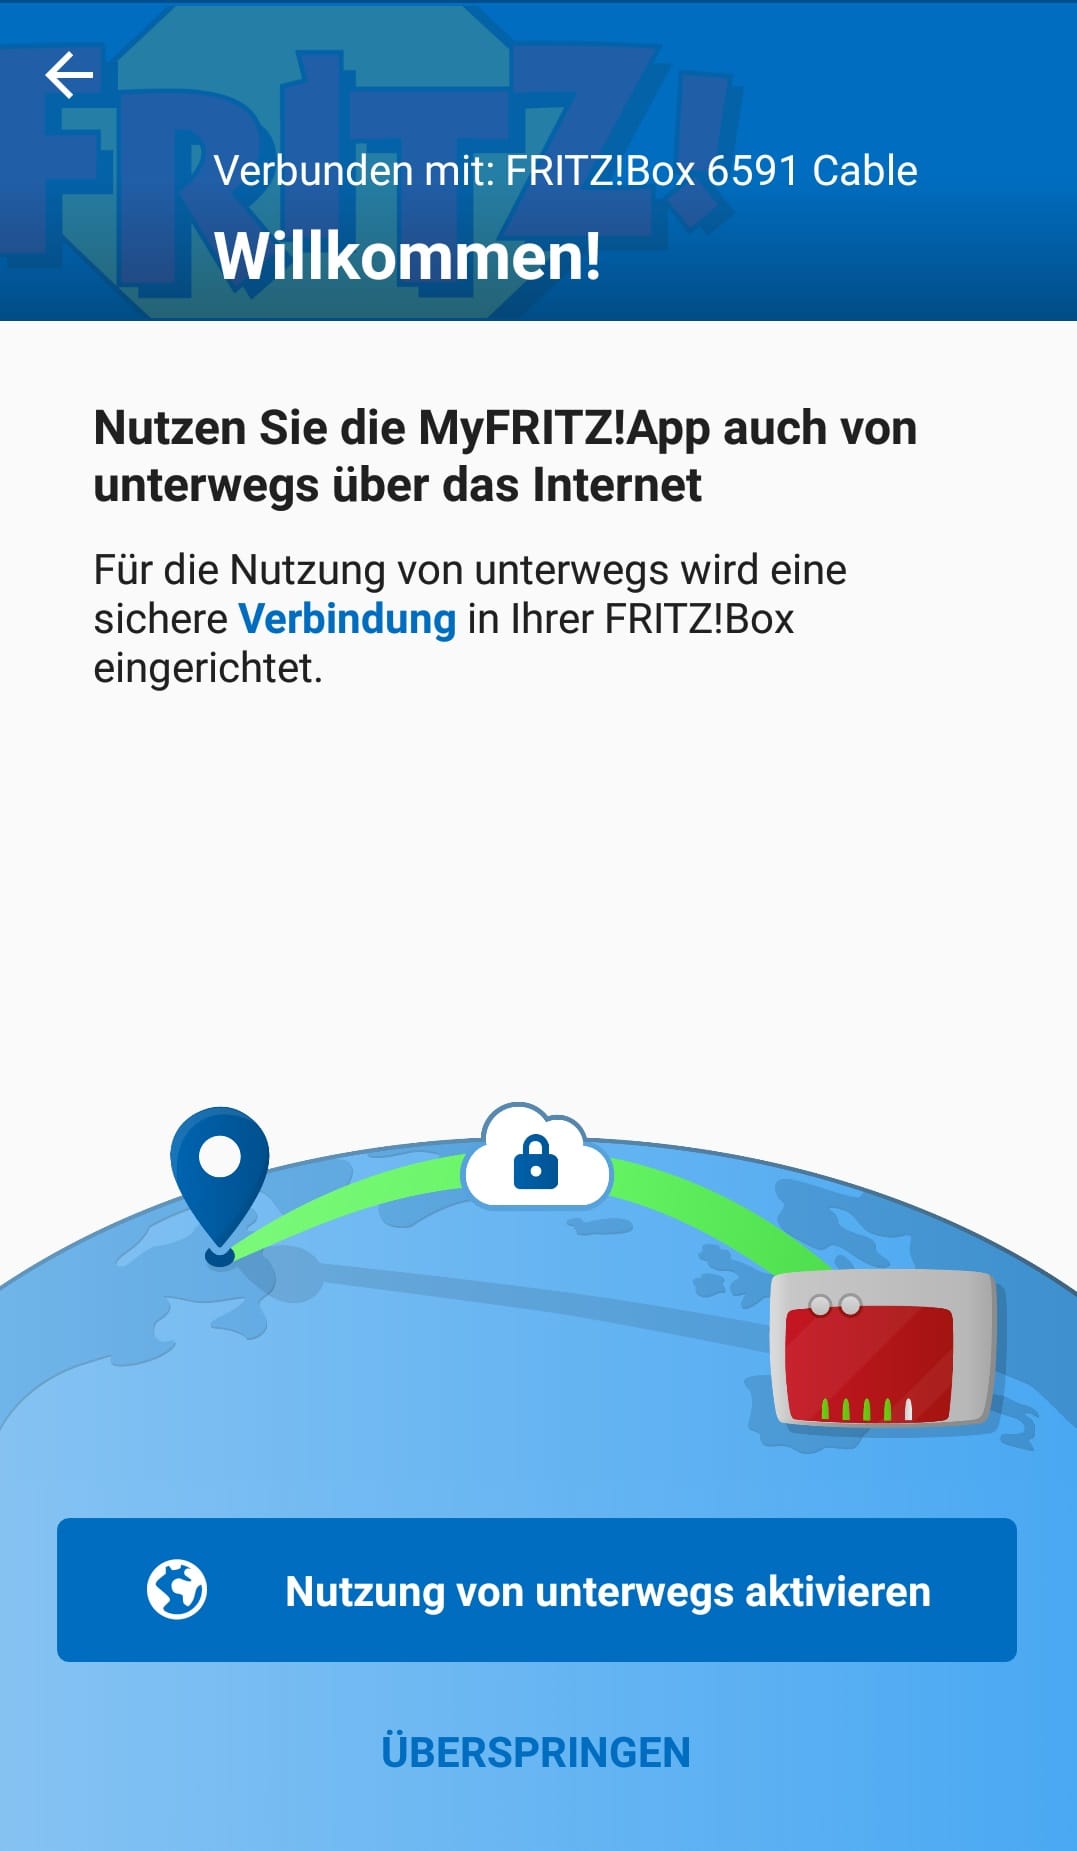 Mithilfe der "MyFRITZ!App" können Sie auch auf alle Funktionen Ihrer Fritzbox mit dem Smartphone zugreifen. Installieren Sie die App am besten, während Ihr Smartphone mit Ihrem WLAN verbunden ist. Das Programm sollte Ihre Fritzbox automatisch erkennen und sich verbinden.